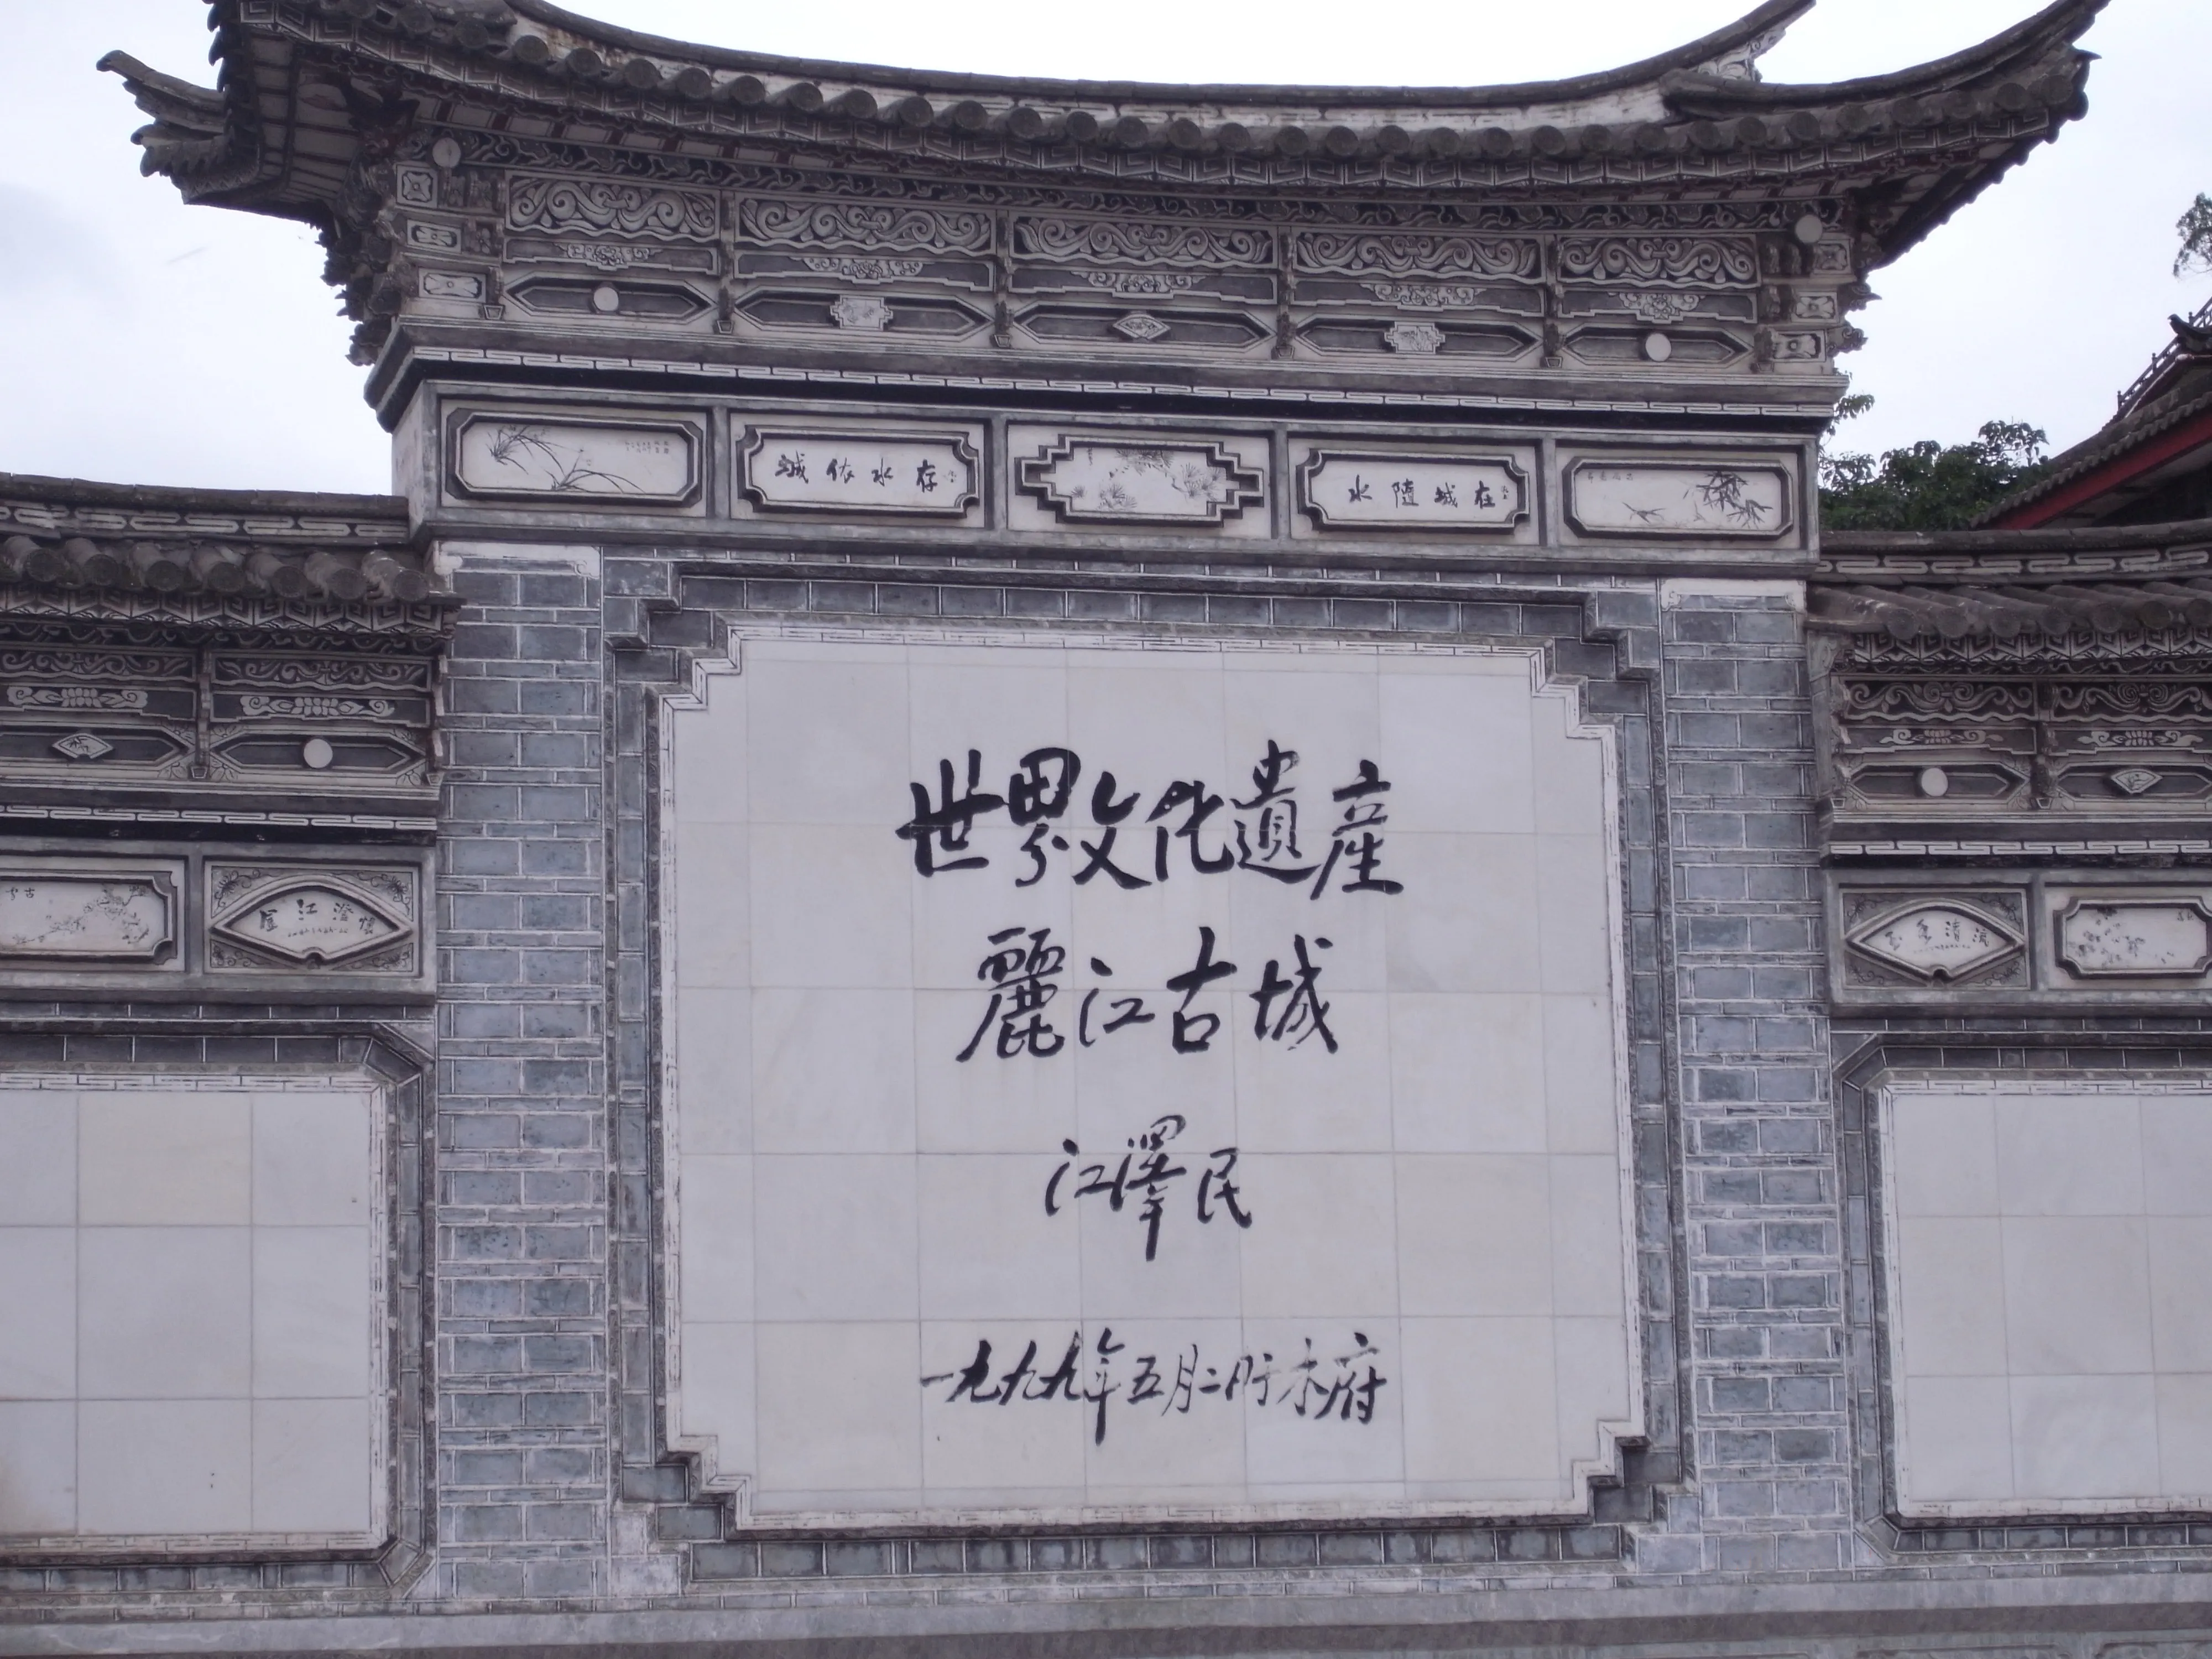 Jiang_Zemin’s_calligraphy_in_Lijiang